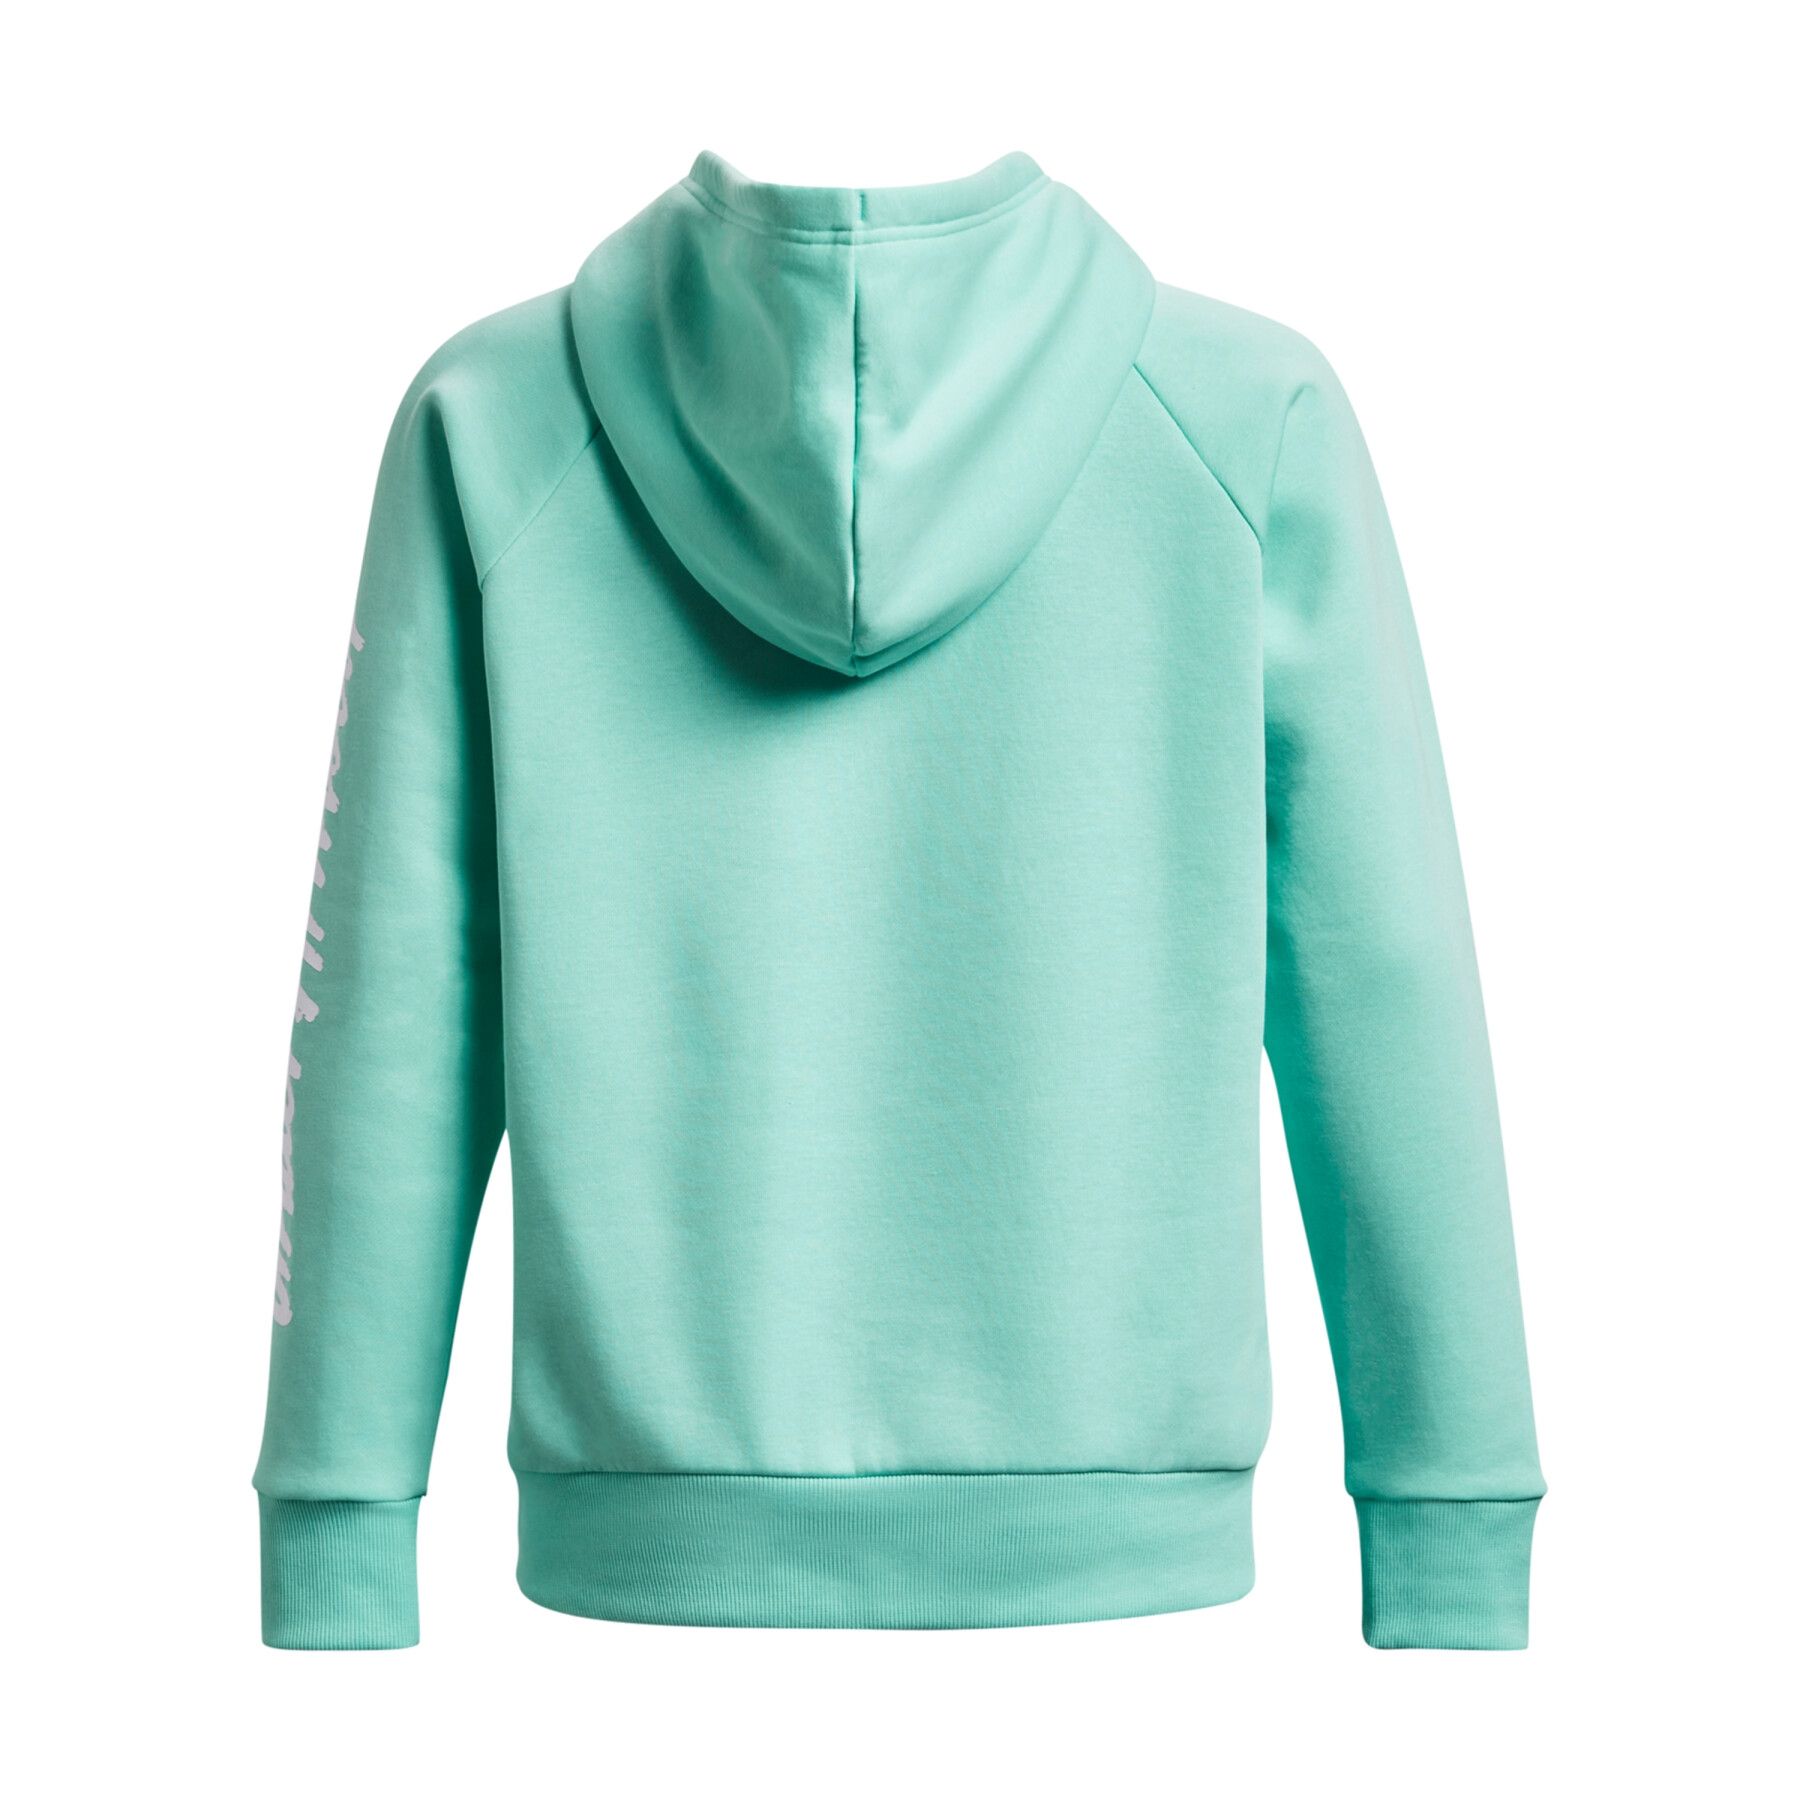 Women's hooded sweatshirt Under Armour Rival Fleece Graphic